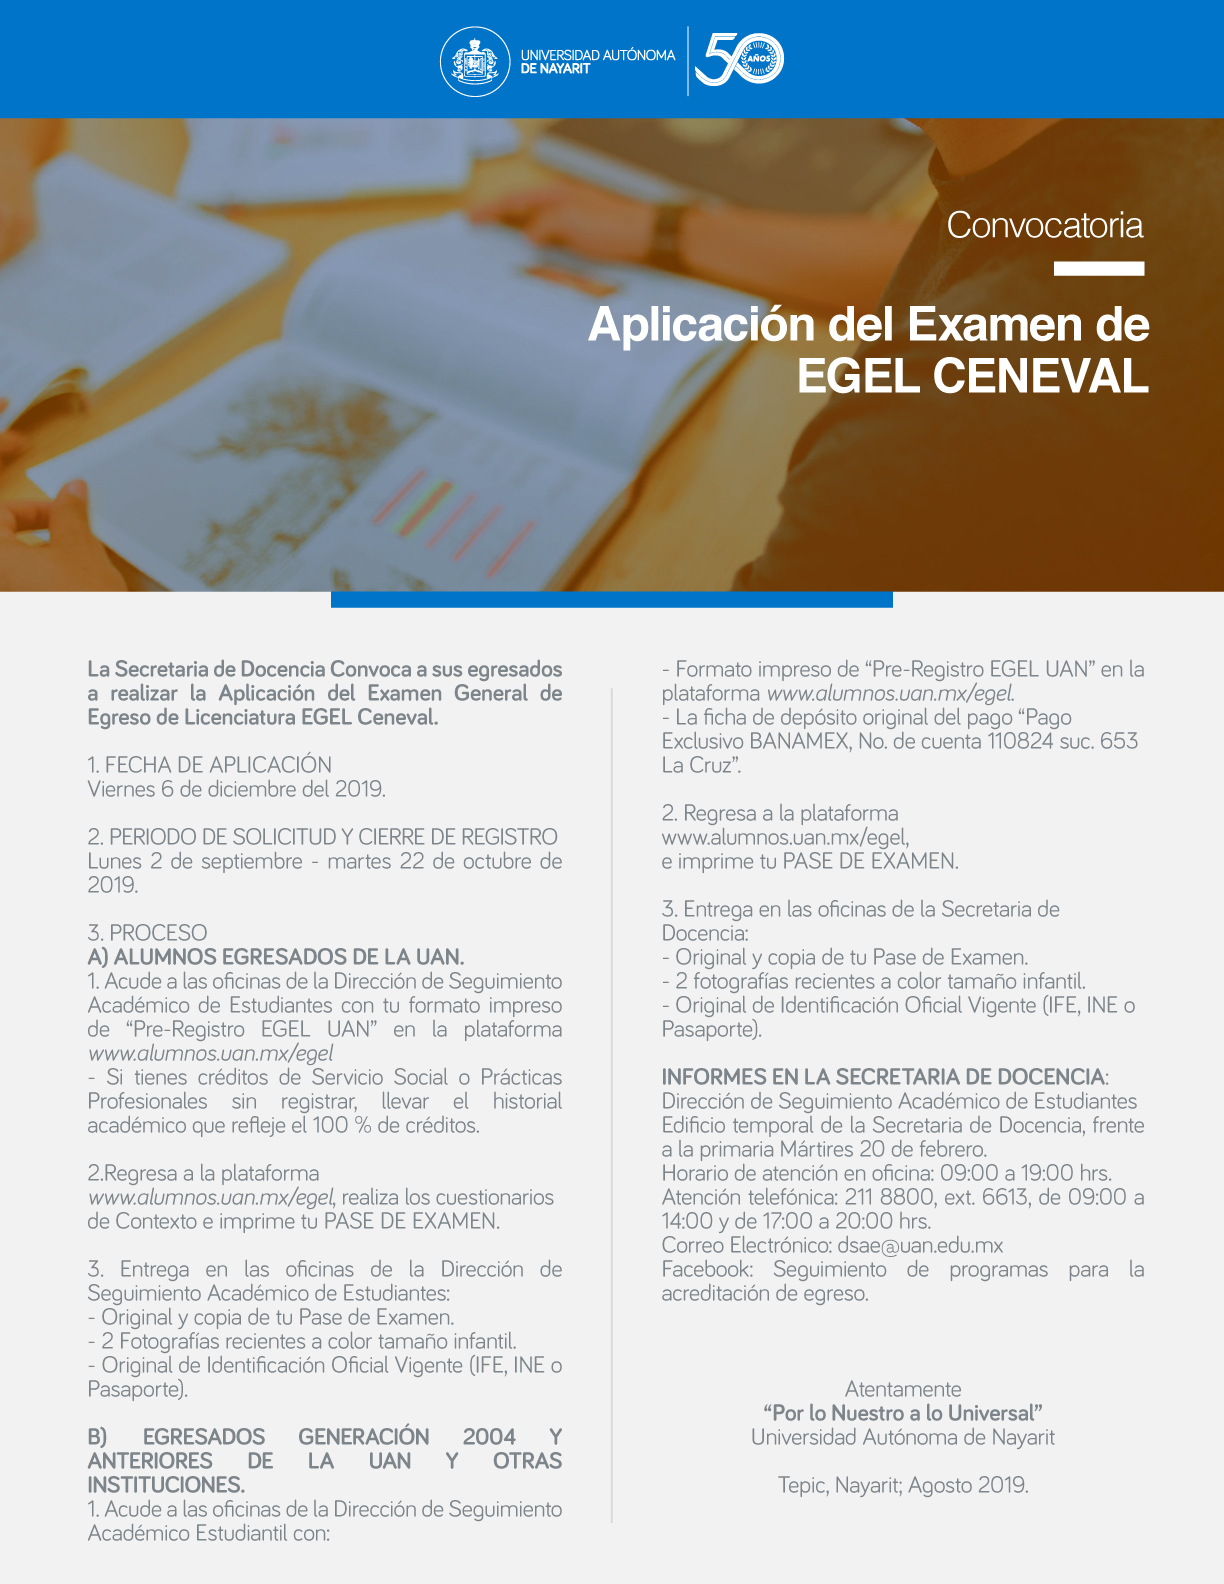 Convocatoria Para Aplicación Del Examen Egel Ceneval 9930